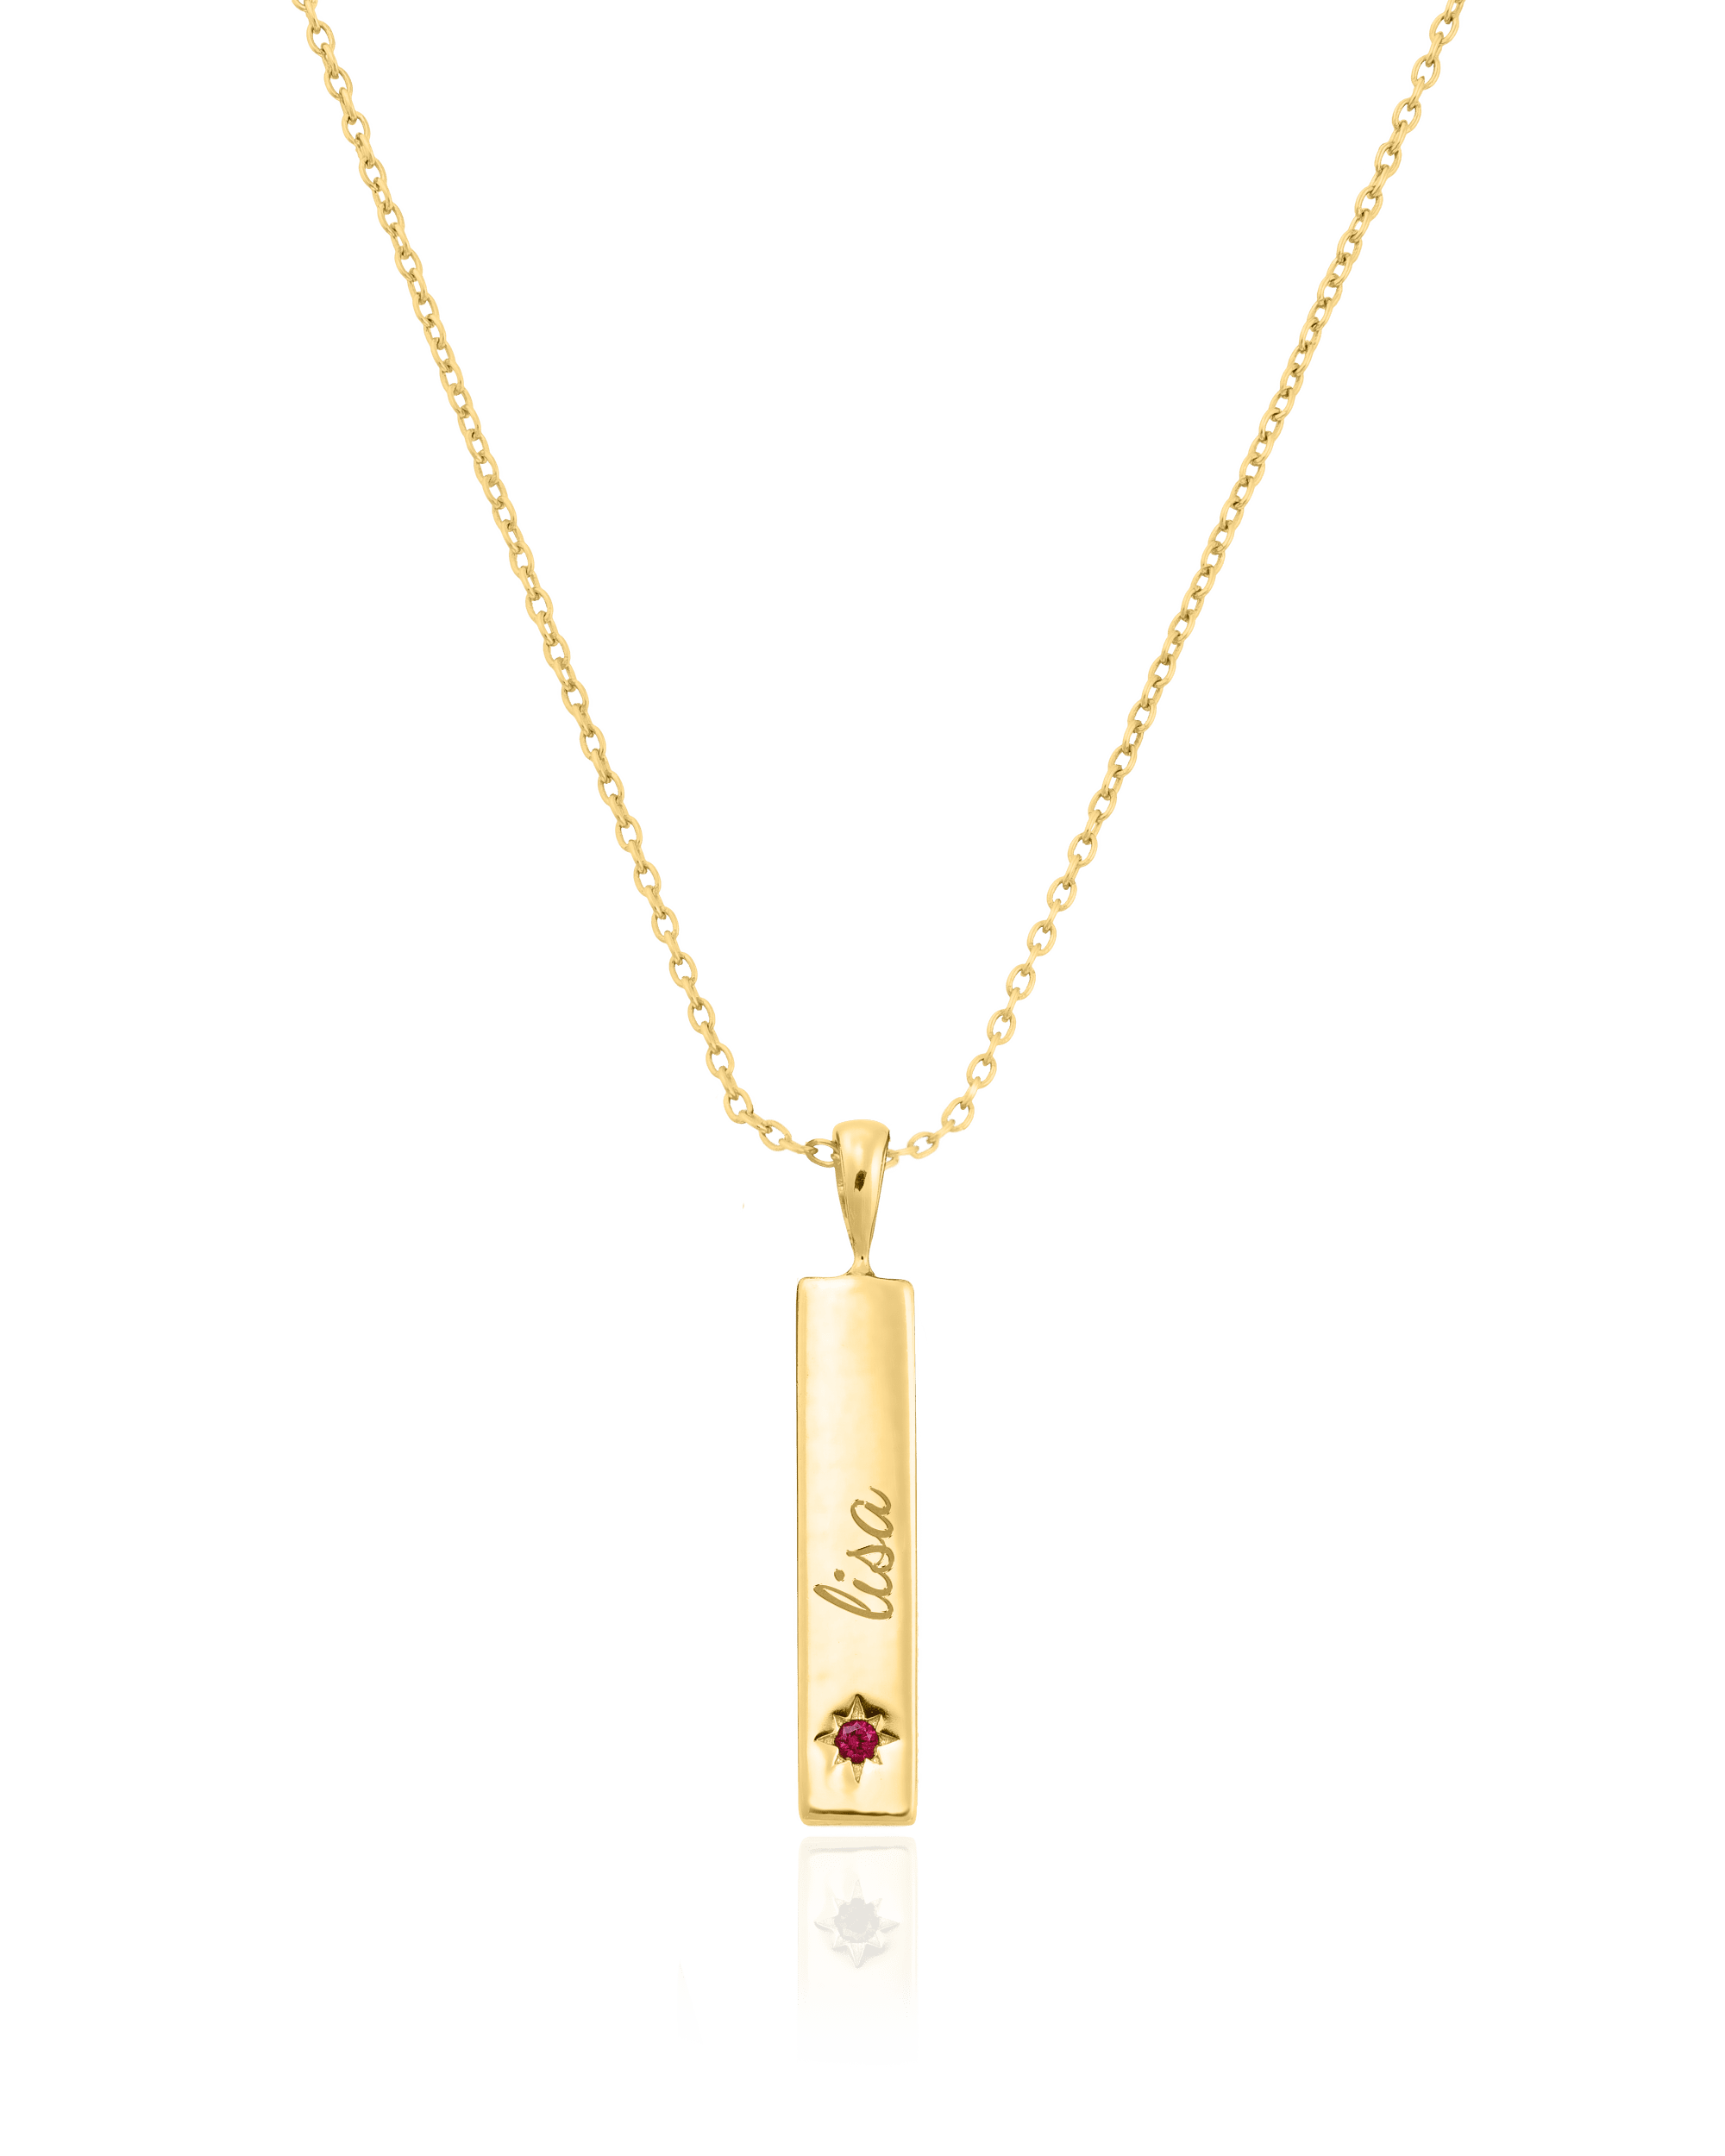 Birthstone Taglet Necklace - 18K Gold Vermeil Necklaces magal-dev 1 Bar 16”+2” extender 